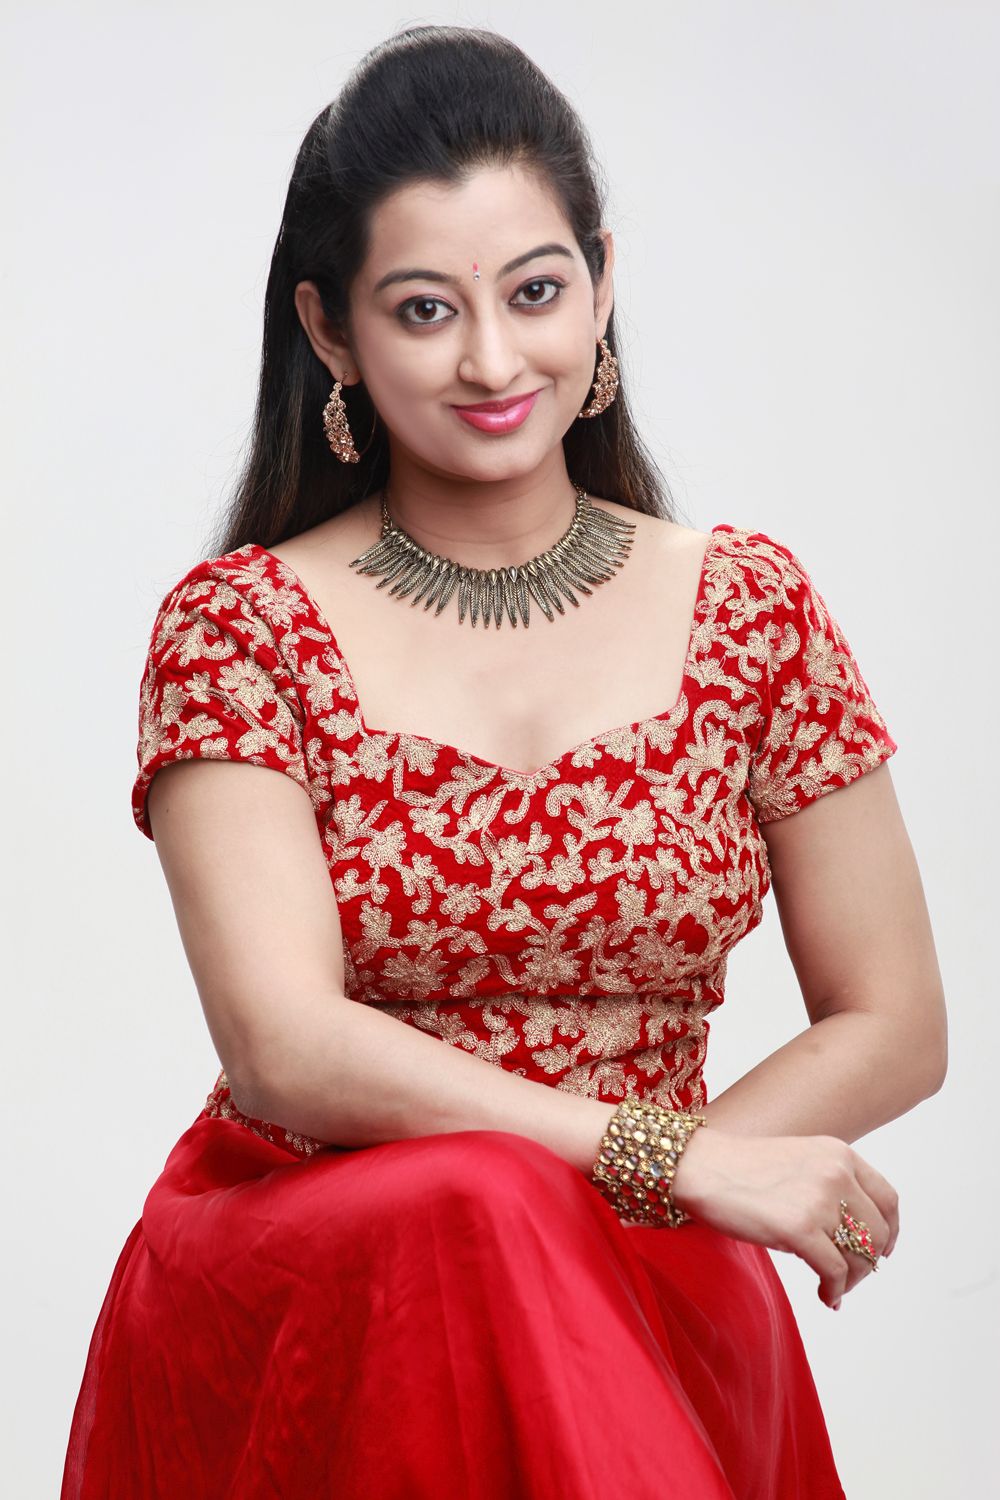 Kannada Tv Serial Actress Names Frseoseots